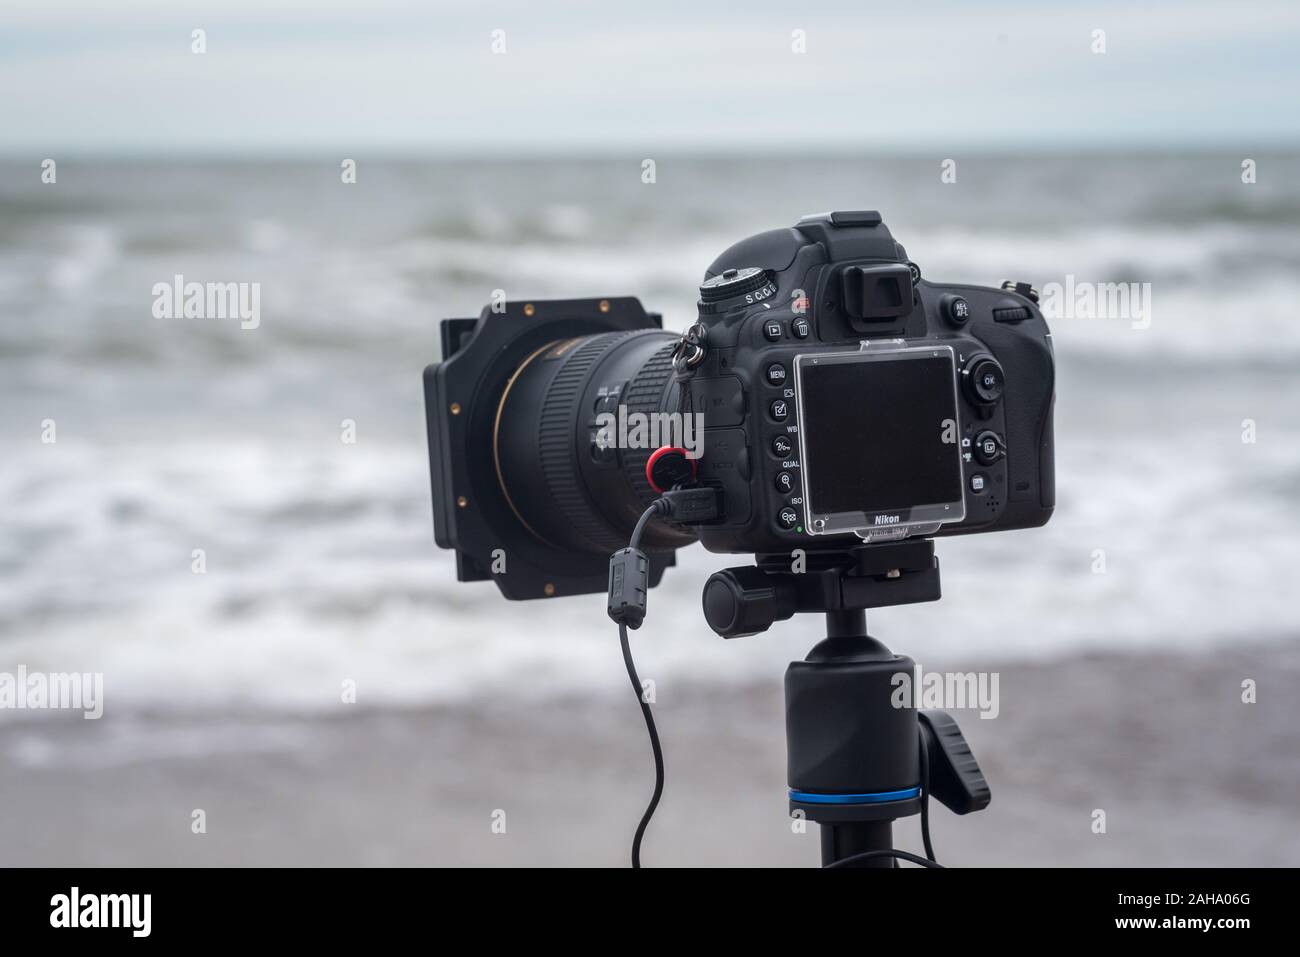 Wicie, Pologne - 31 octobre 2016 : appareil photo reflex numérique Nikon D610 sur un trépied avec des filtres pour la photographie de paysage Banque D'Images